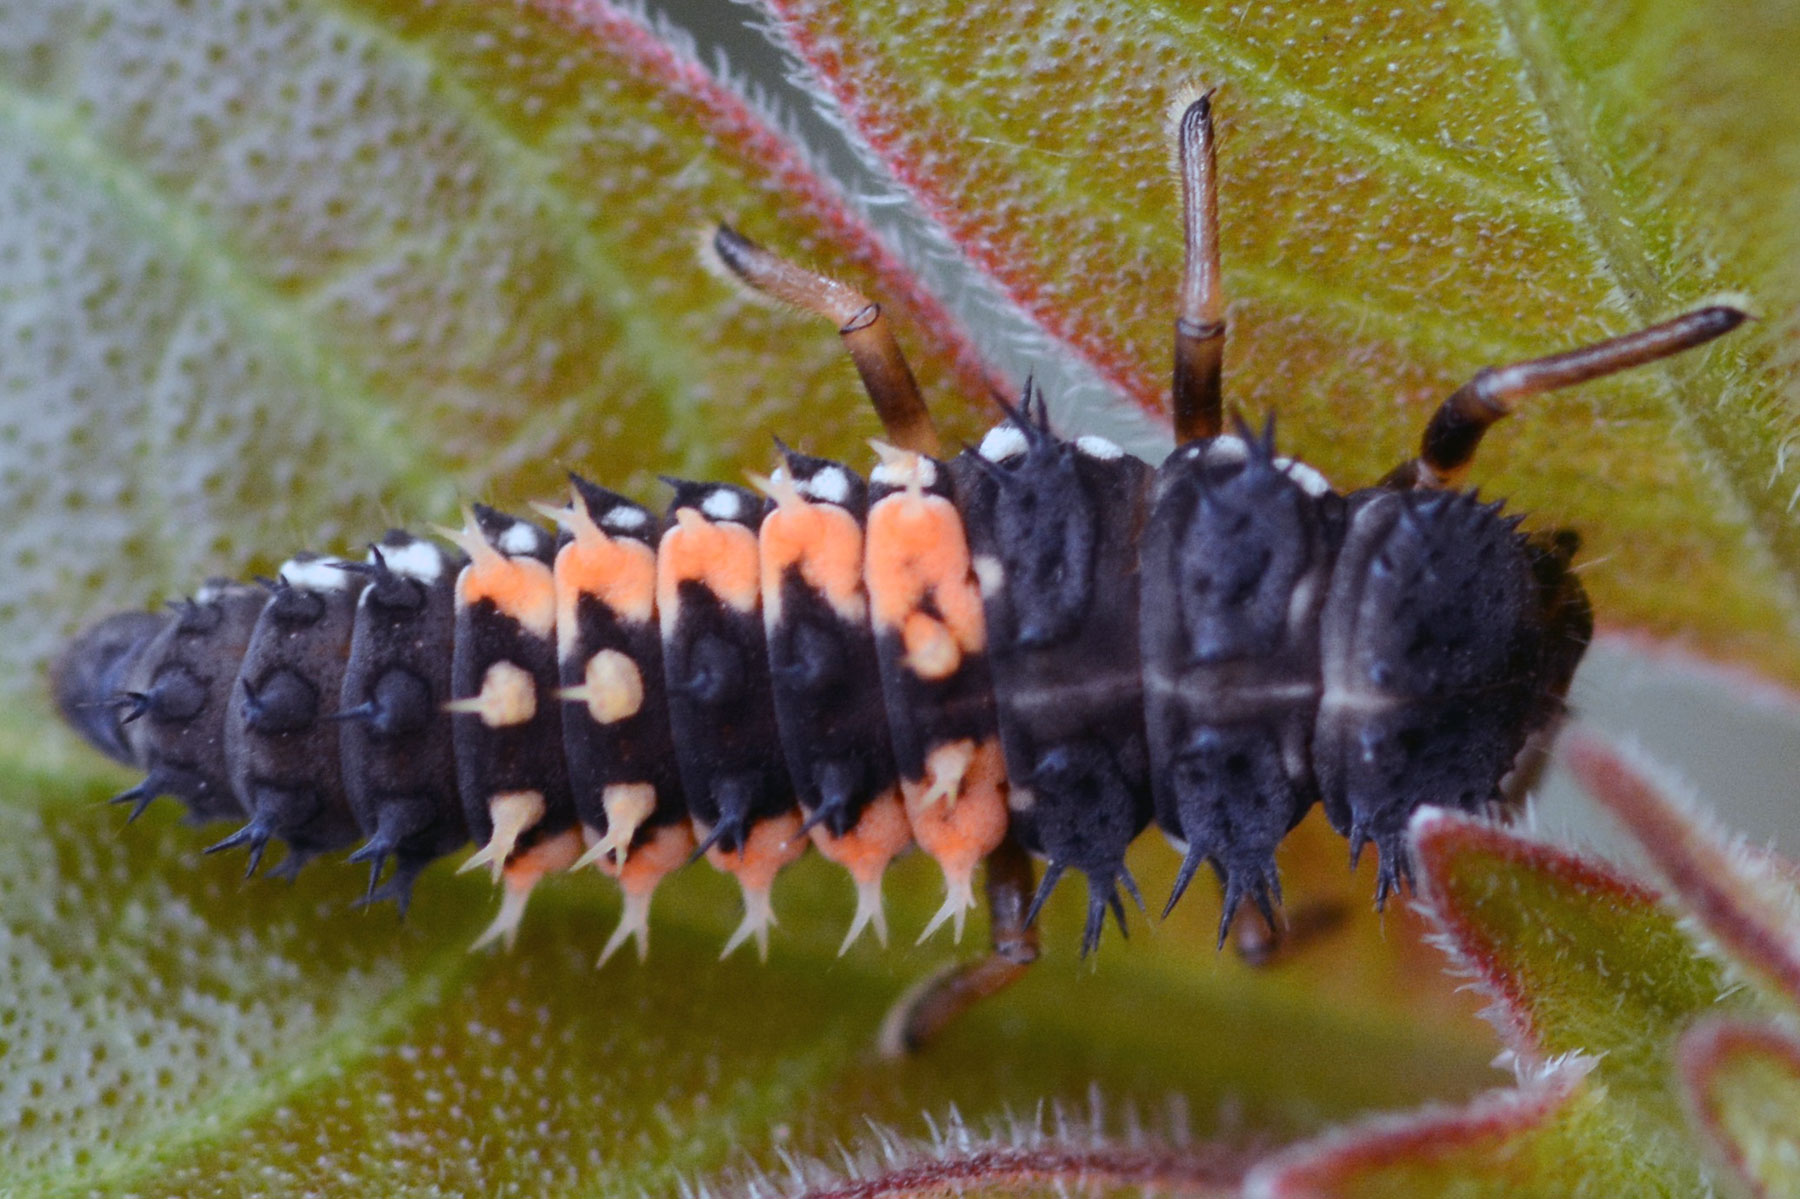 Asian Ladybug Larva (Harmonia axyridis)